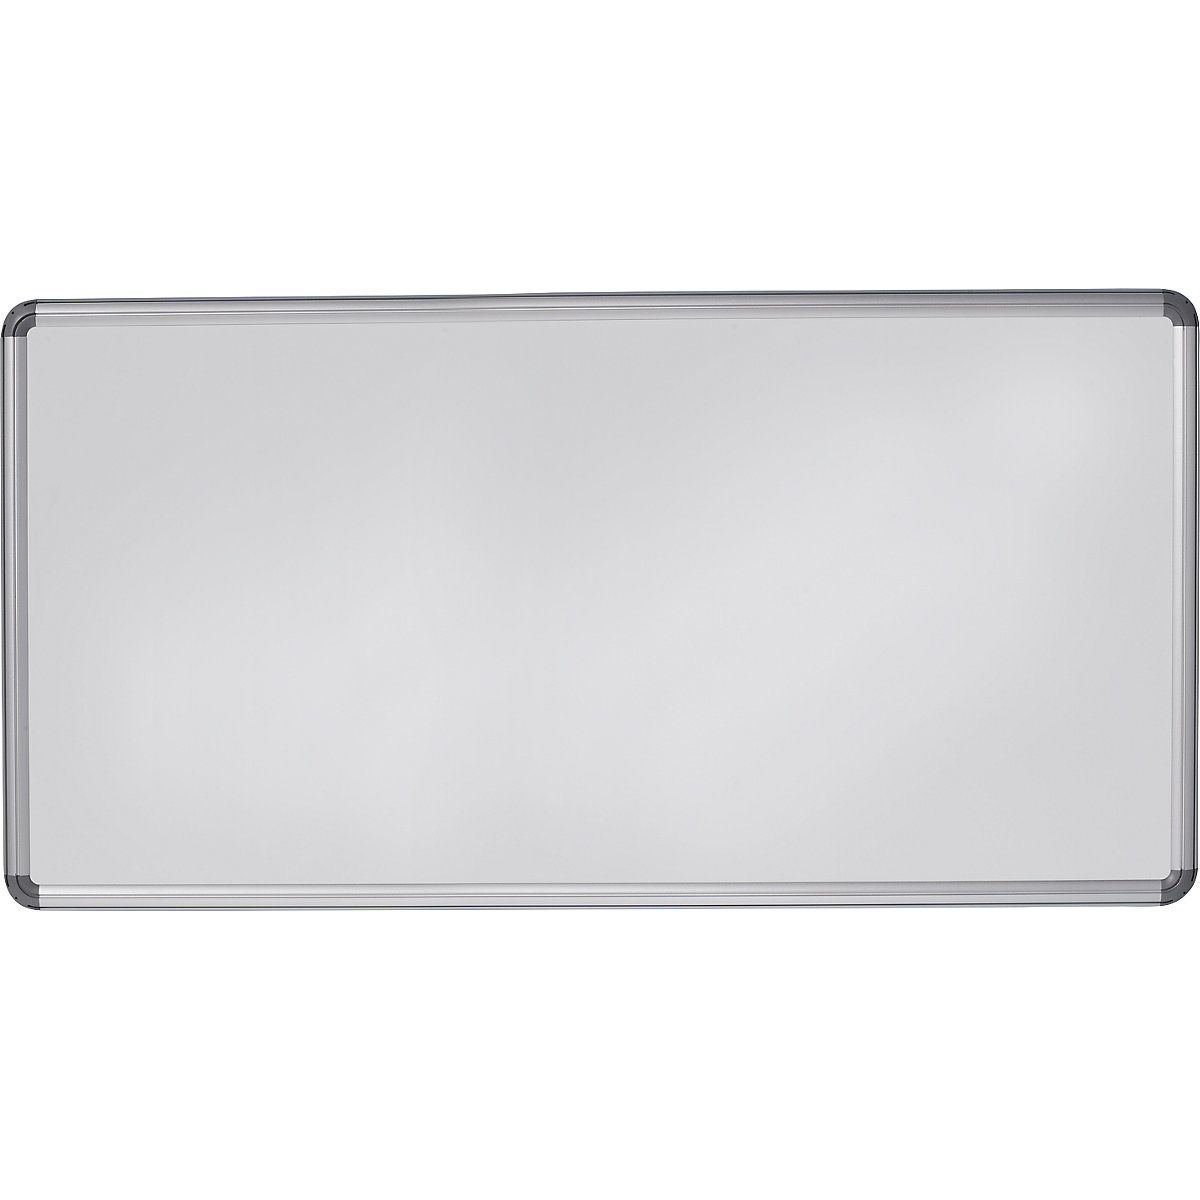 Designerska tablica ścienna – eurokraft pro, blacha stalowa, lakierowana, szer. x wys. 2400 x 1200 mm, biały-13